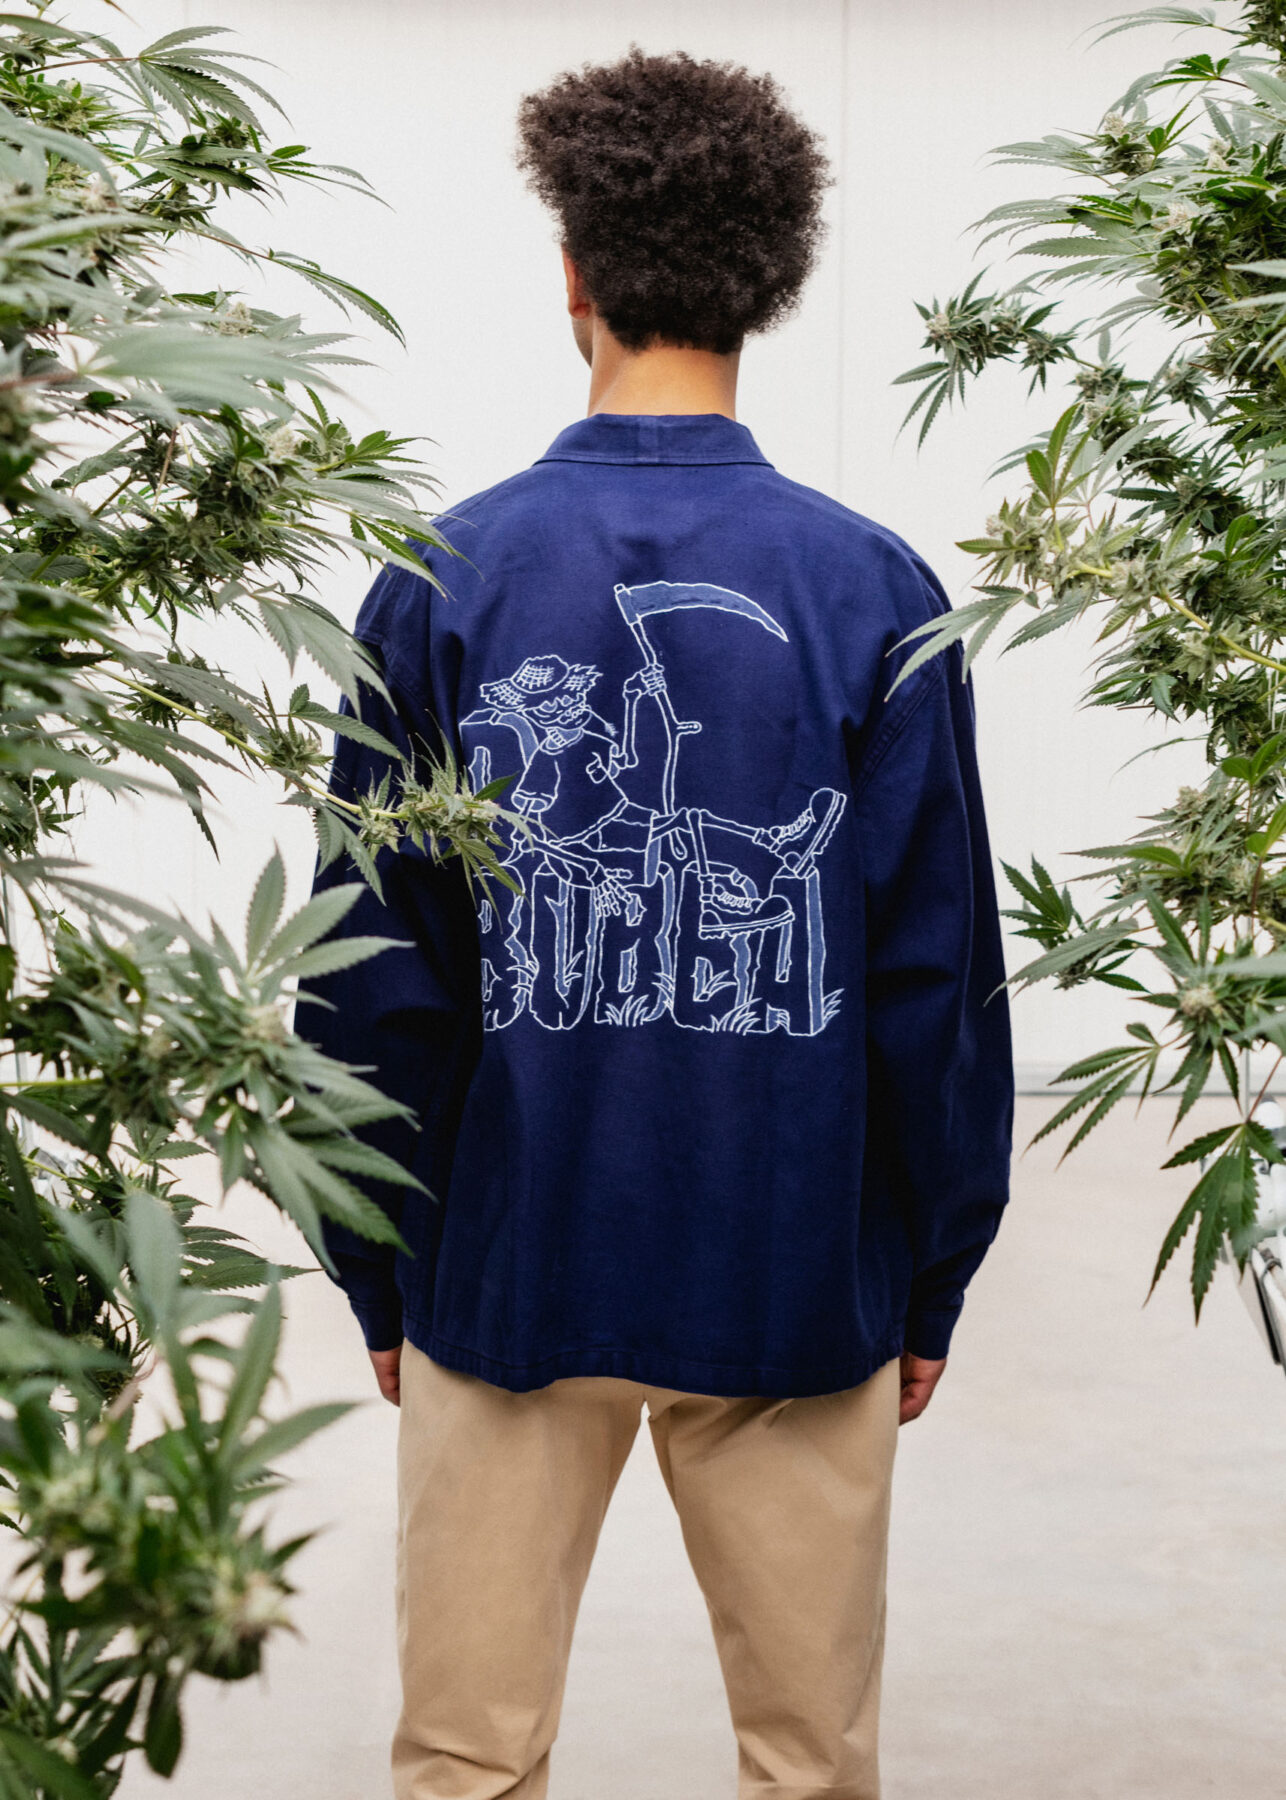 model wearing D.Bubba jacket in greenhouse